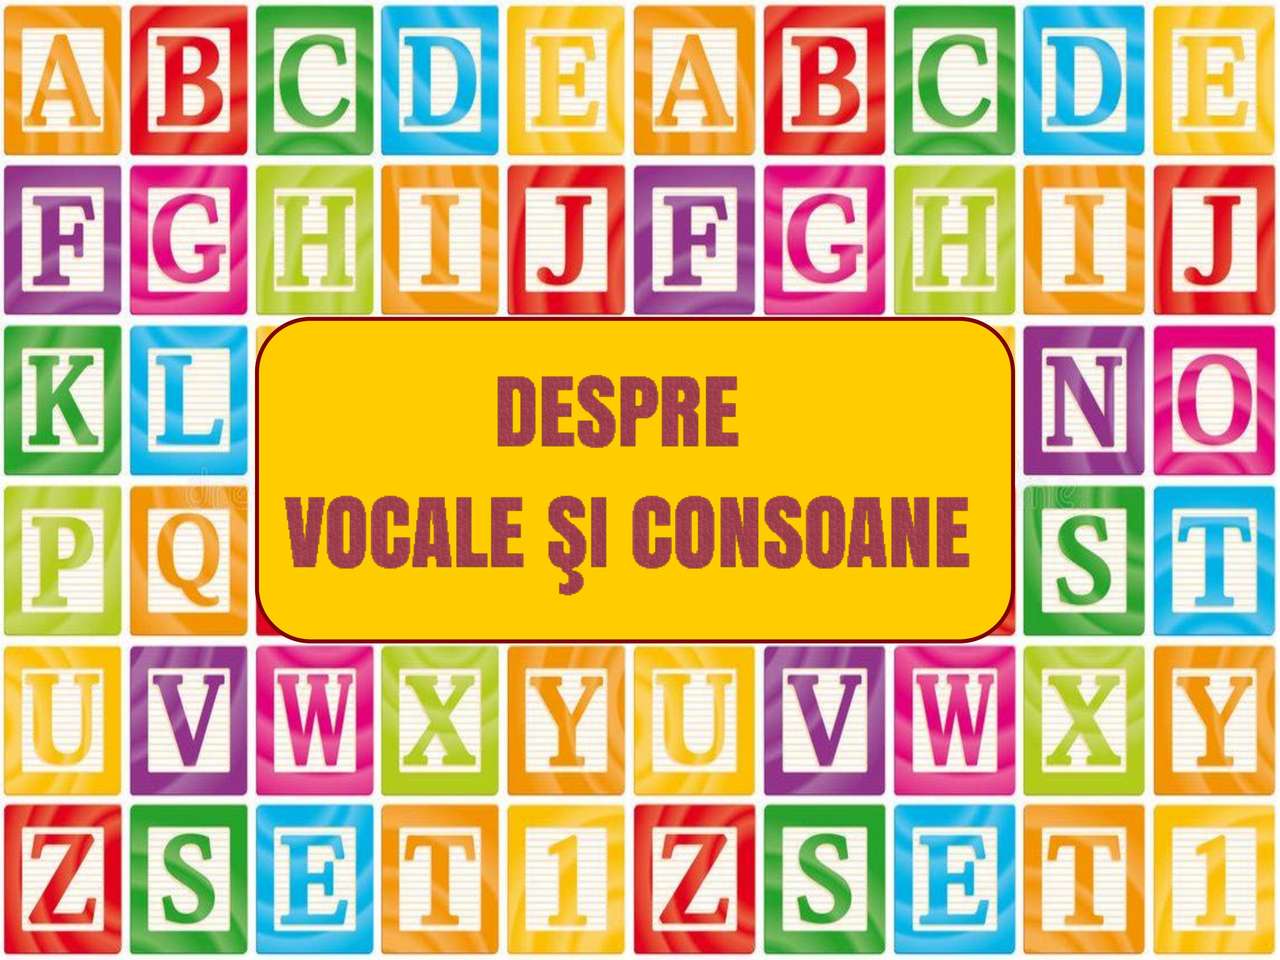 Konsonanten und Vokale Puzzlespiel online